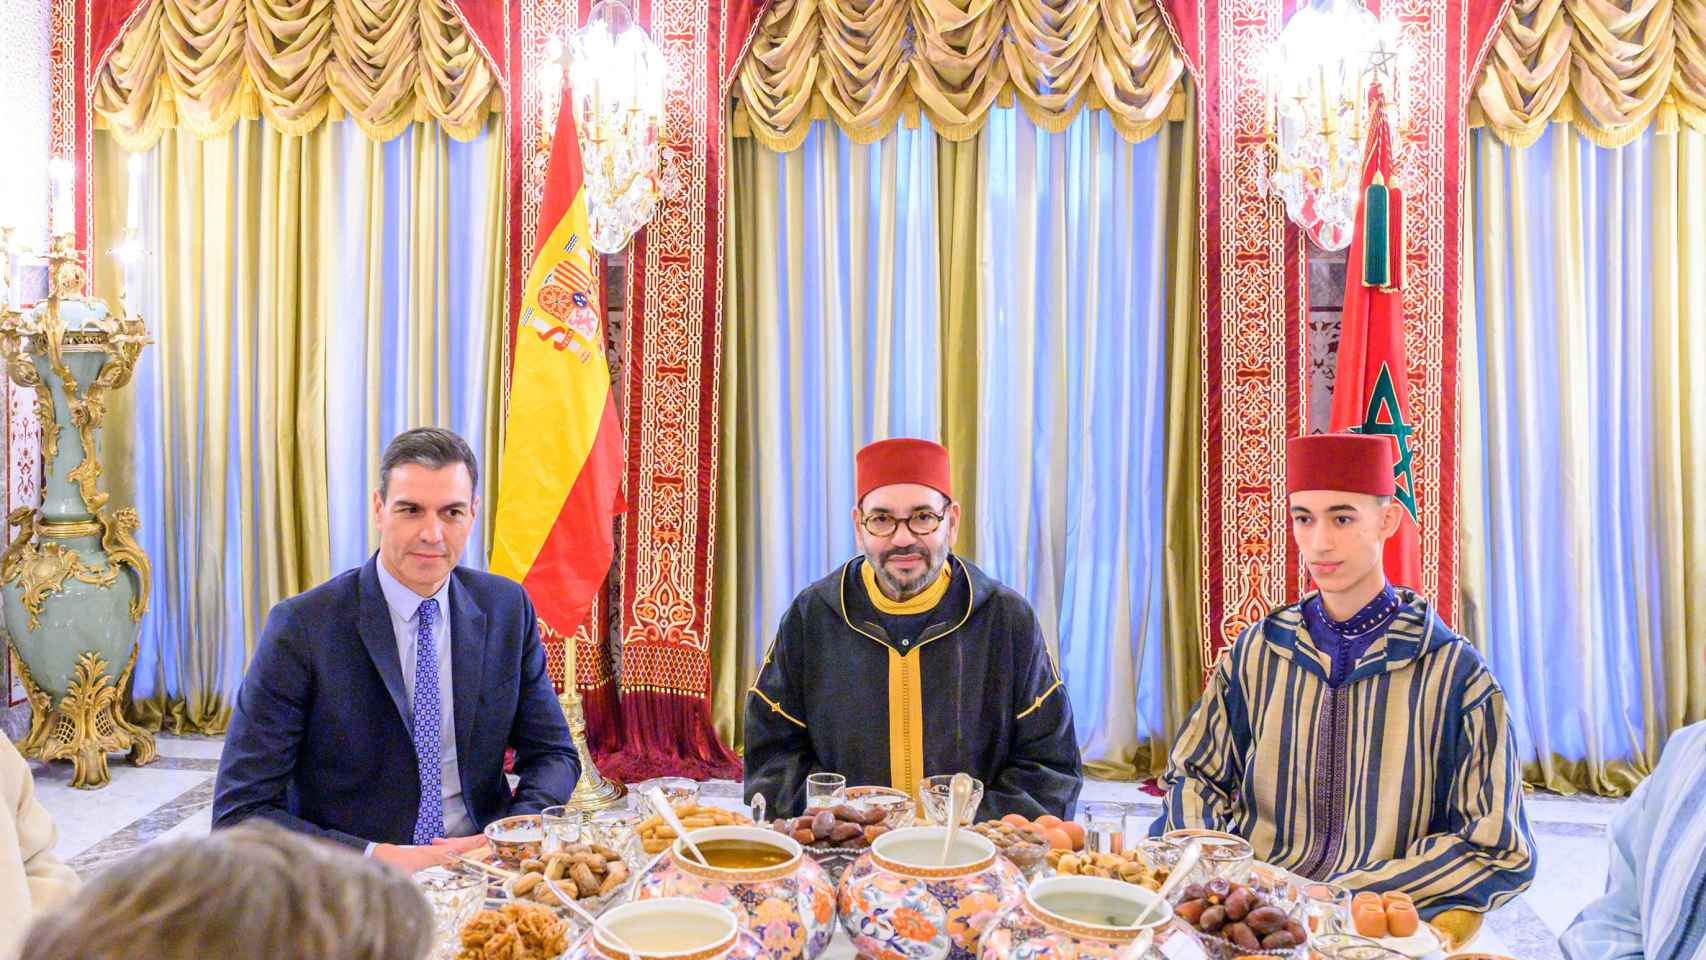 Mohamed VI dará a Pedro Sánchez trato de 'jefe de Estado' cuando le reciba  en Marruecos